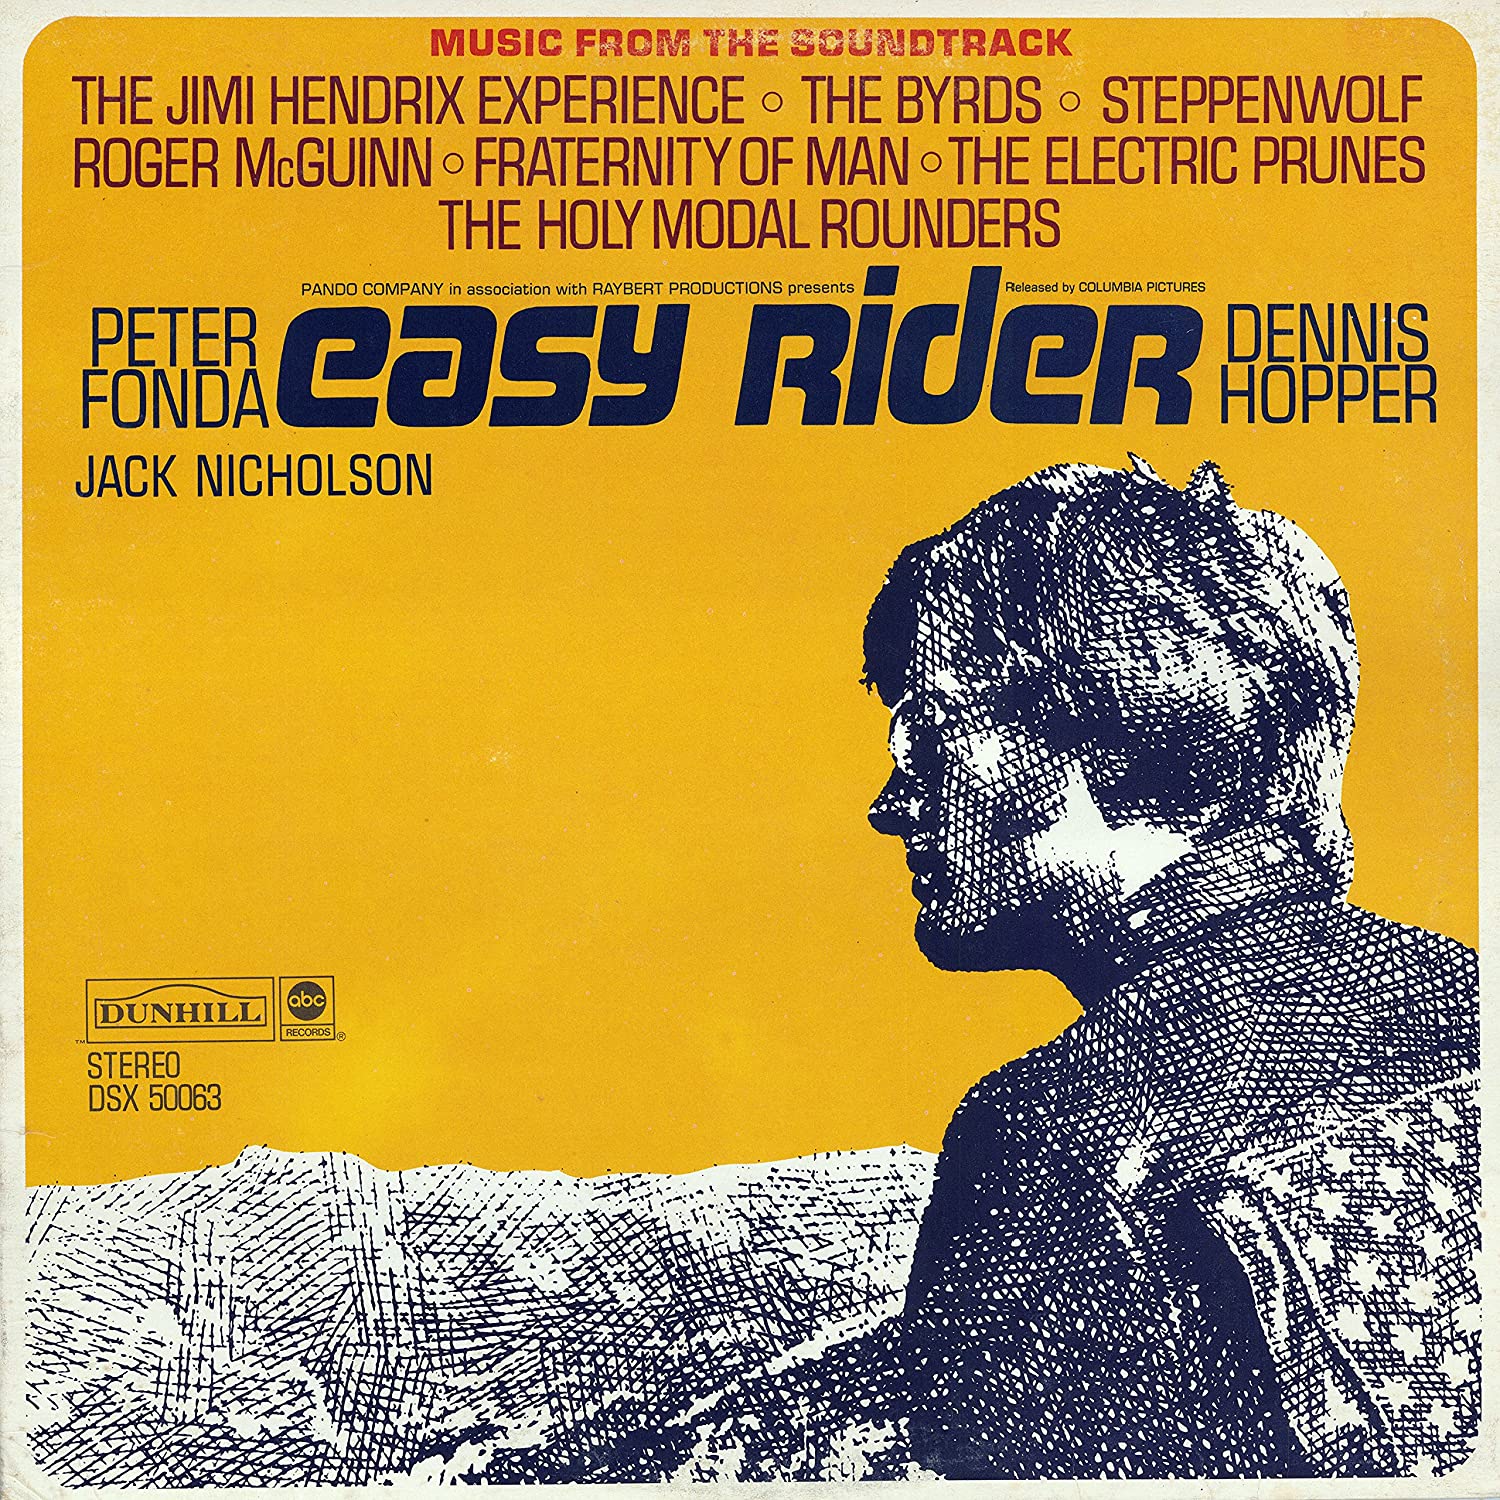 Το εξώφυλλο του σάουντρακ της ταινίας Easy Rider